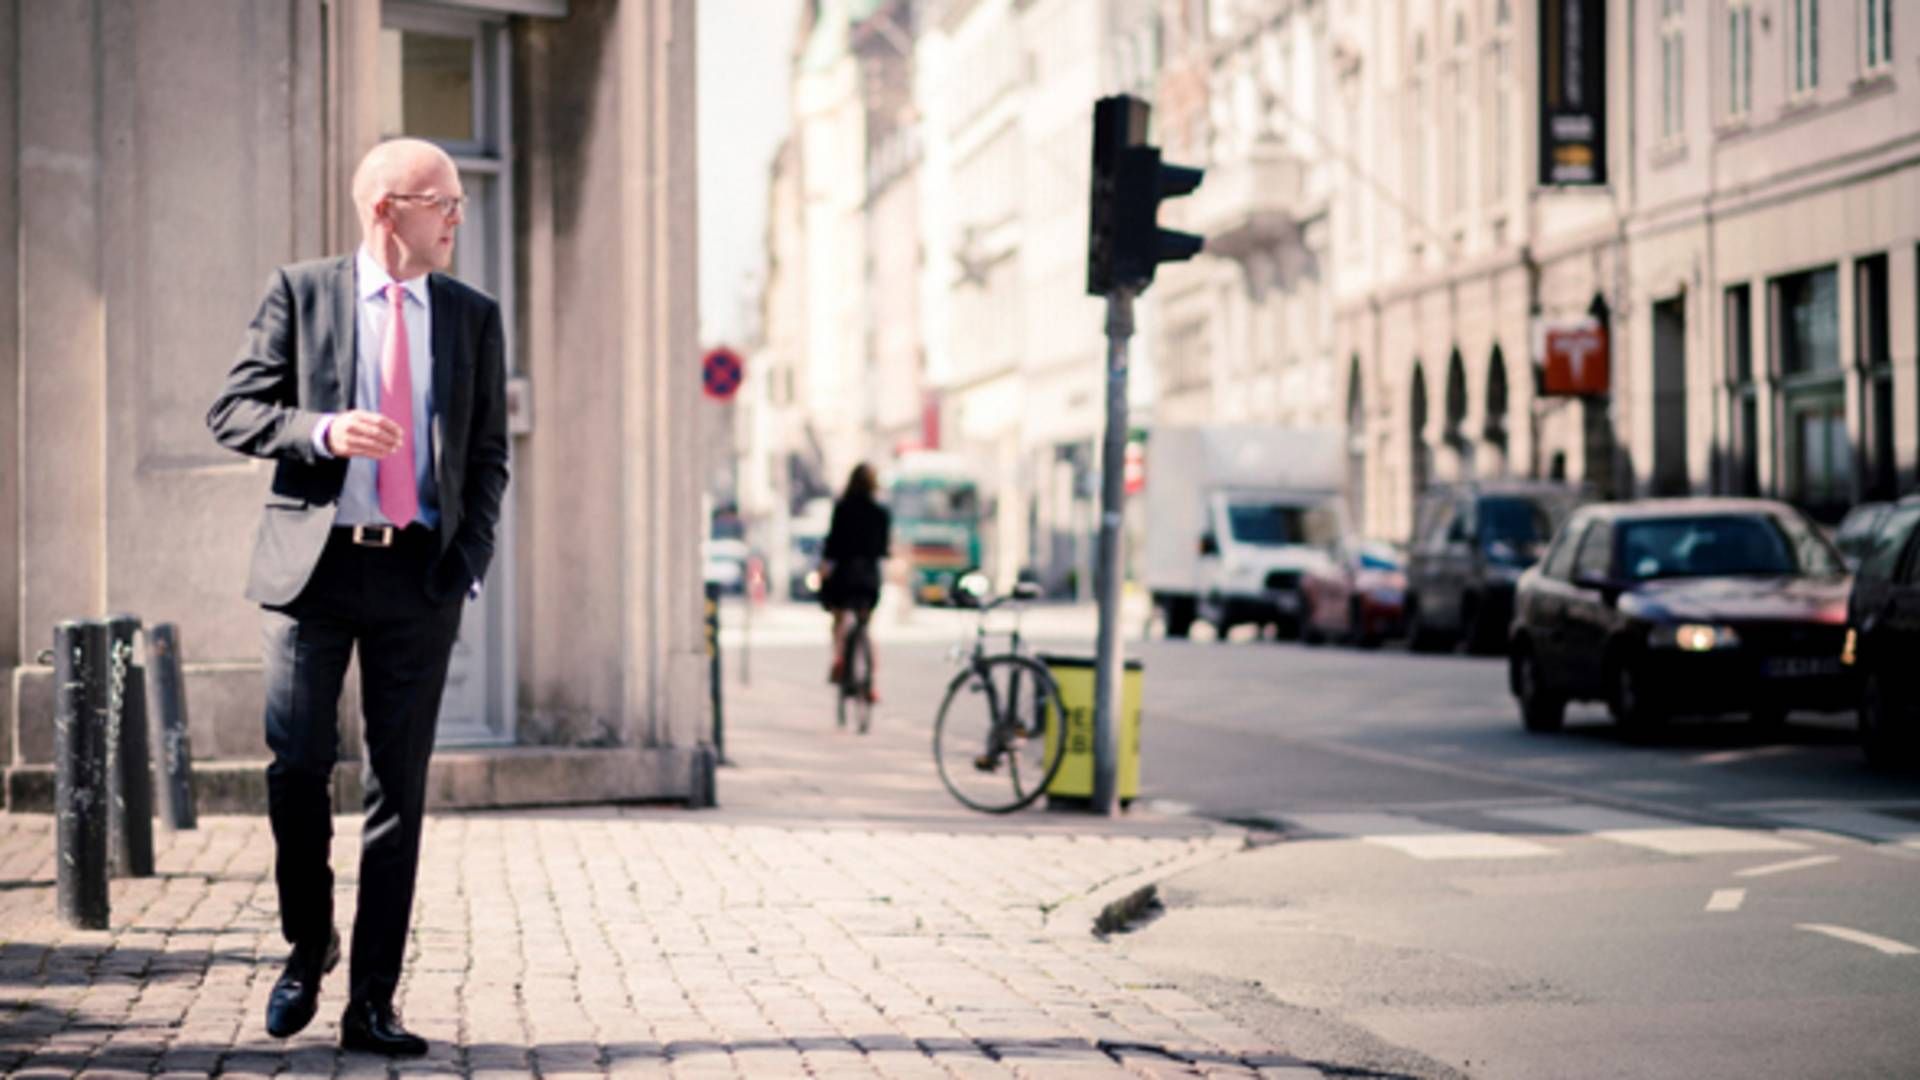 Ejendomsmarkedet har kunnet holde til en hel del i forhold til, hvor det er endt henne, mener Per Hallgren, adm. direktør i børsnoterede Jeudan. | Foto: PR/Jeudan